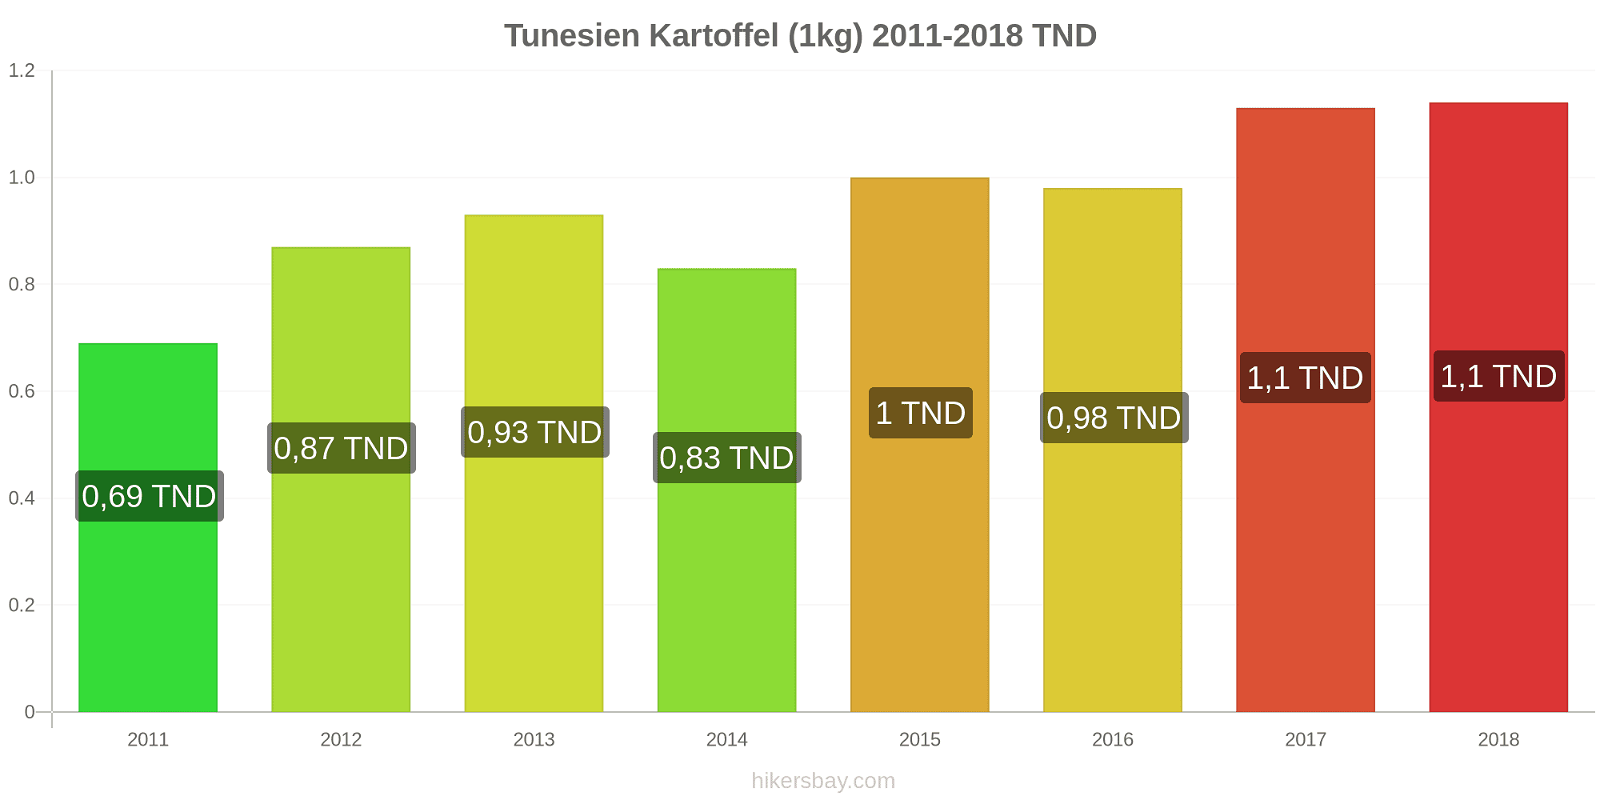 Tunesien prisændringer Kartoffel (1kg) hikersbay.com